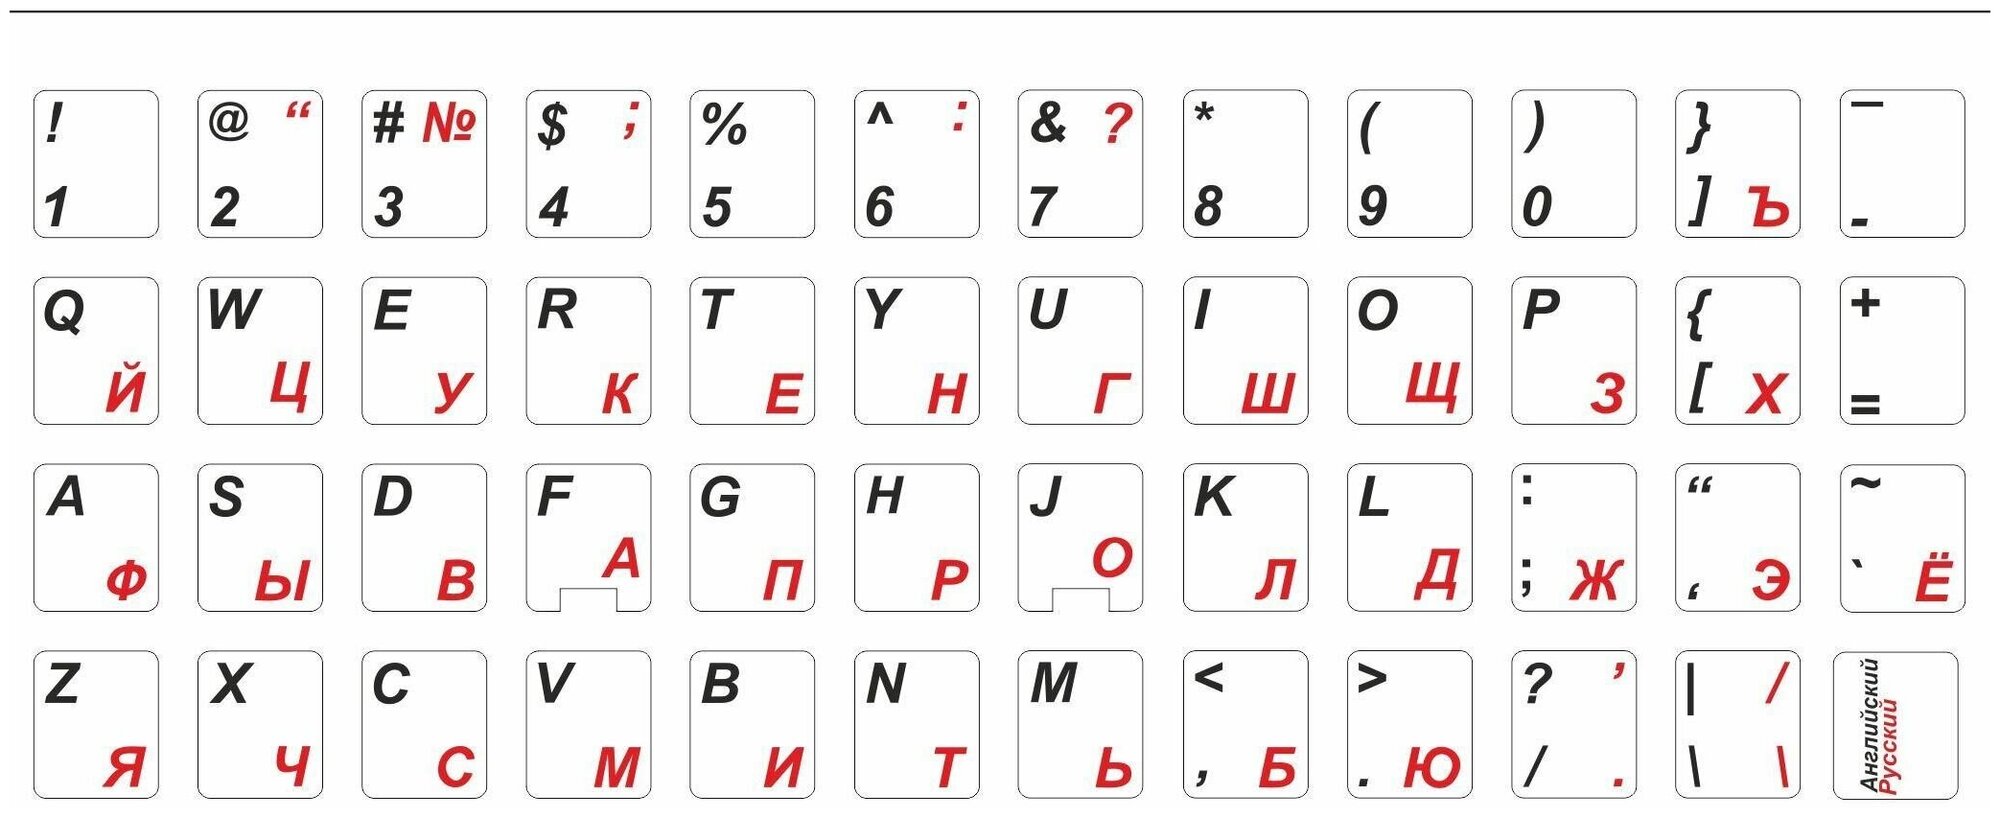 Наклейки на клавиатуру матовые с русскими буквами для ноутбука, настольного компьютера, клавиатуры, ноутбука 11x13 мм